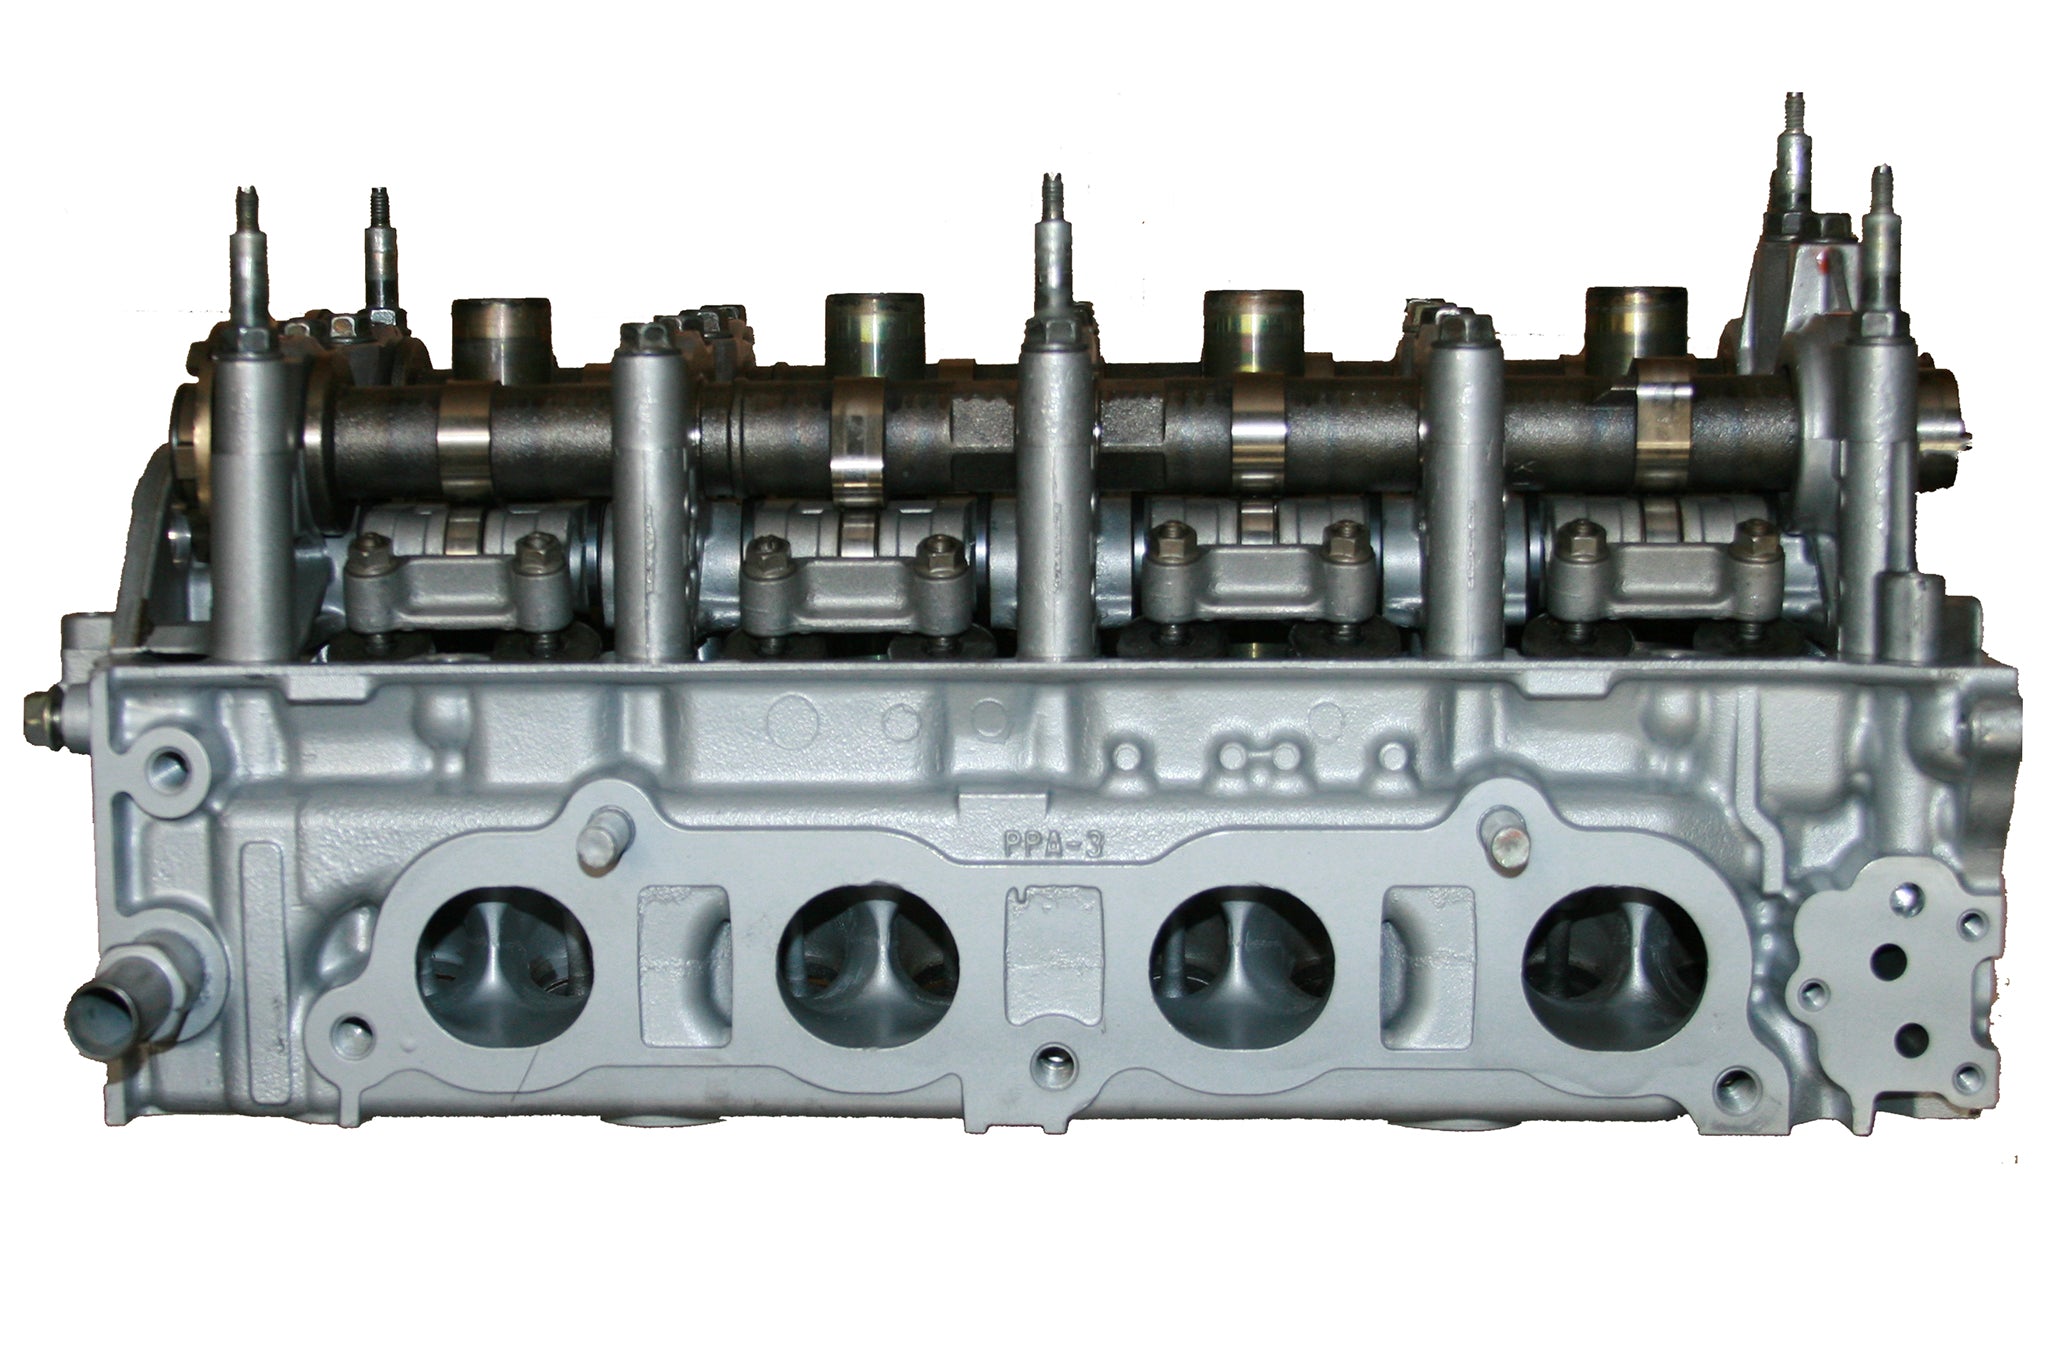 2002-2011 Honda 2.4L DOHC K24A rebuilt cylinder head casting # PPA